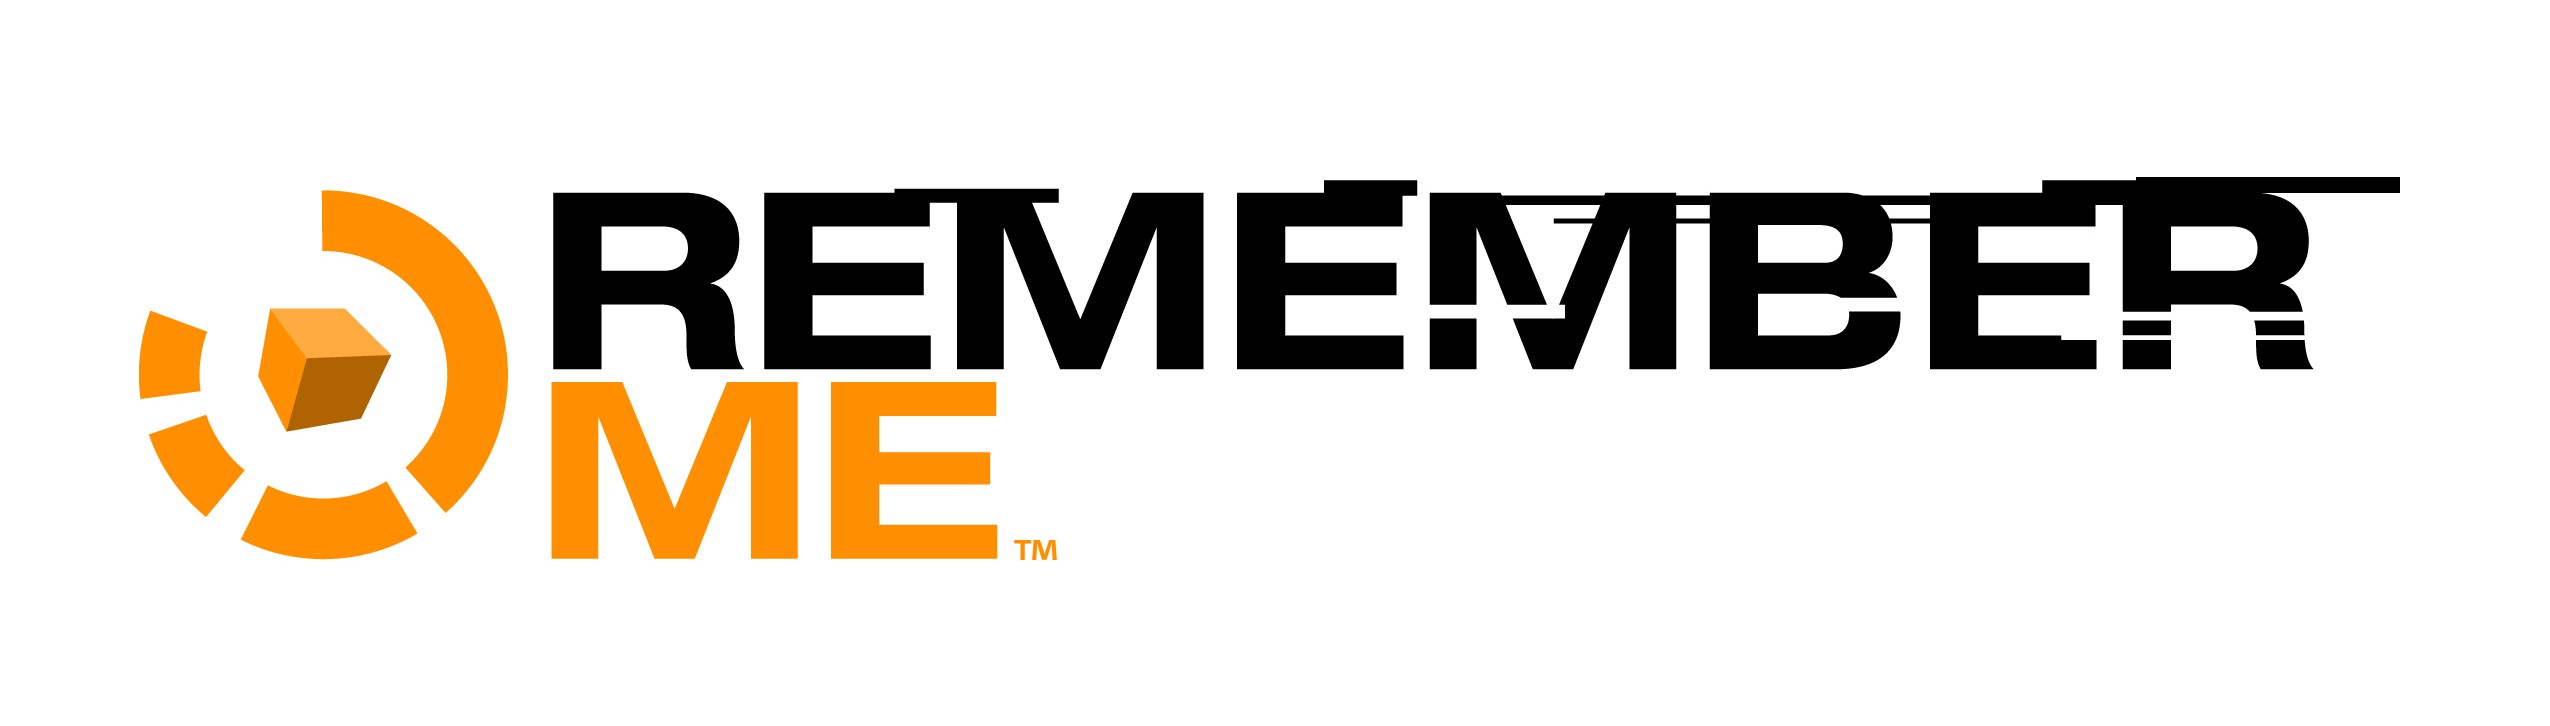 Remember remember гет пикс. Remember me logo. Remember me (2013). Репак ми. Remember me icon.